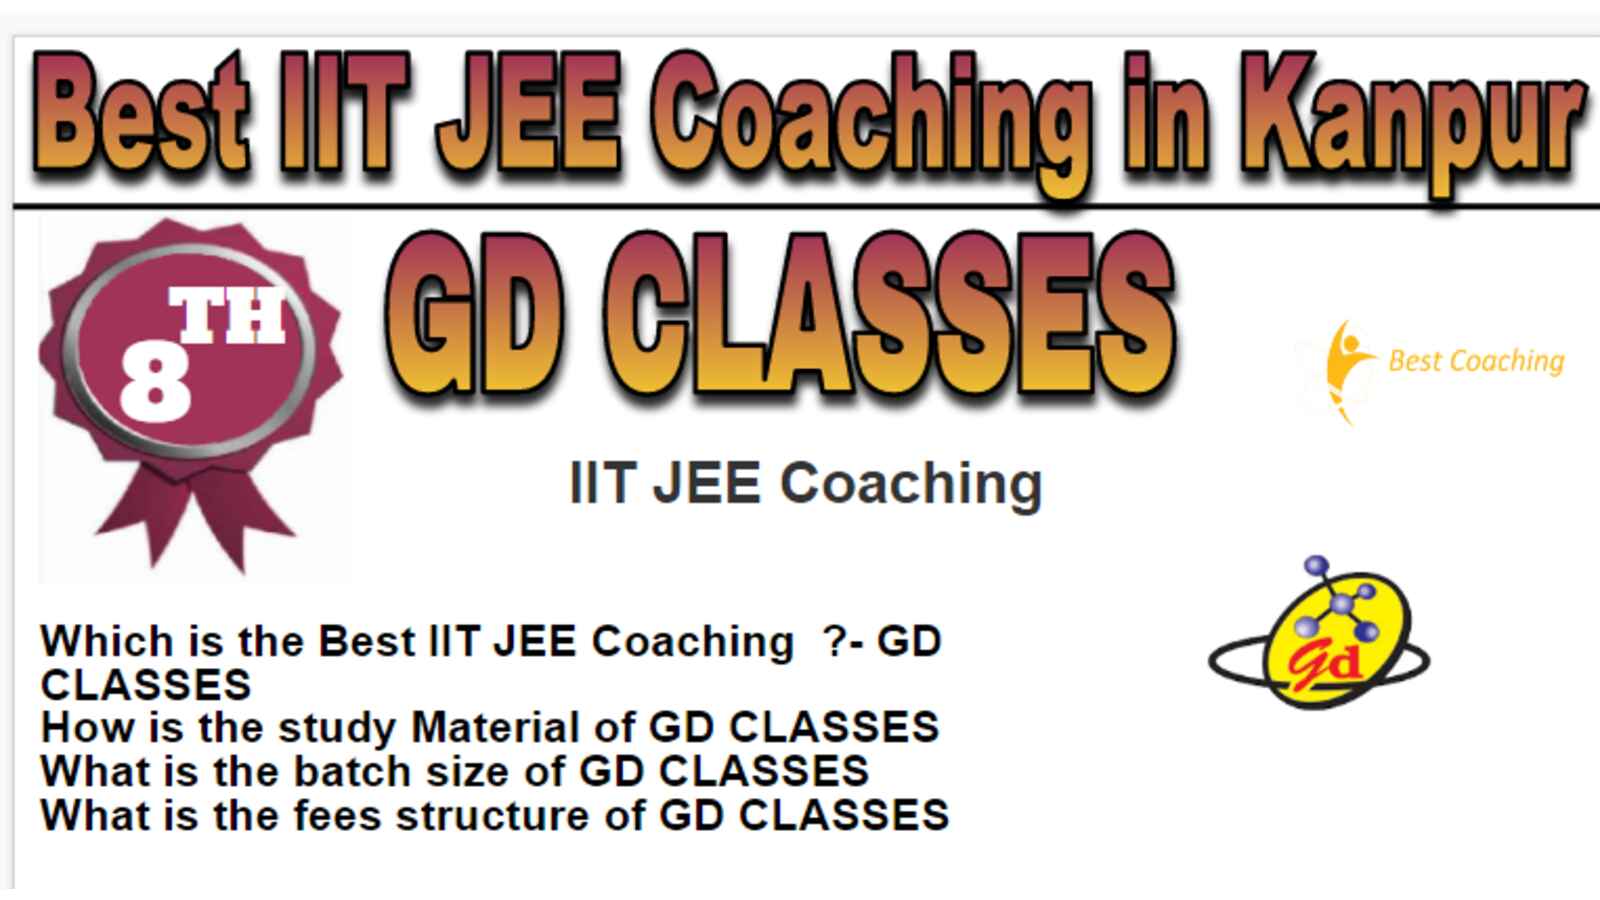 Rank 8 Best IIT JEE Coaching in Kanpur